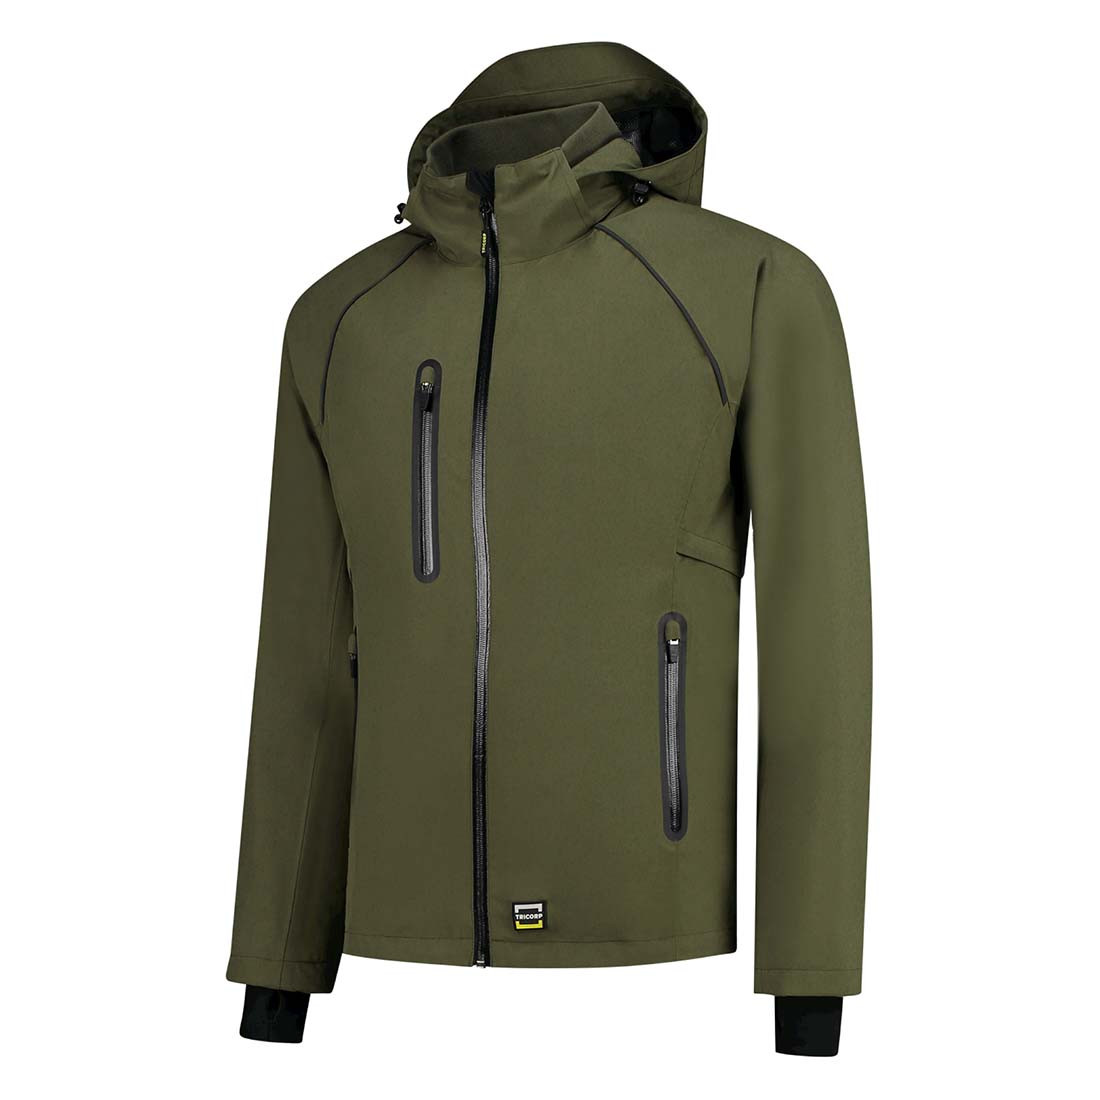 Unisex Rain Jacket - Safetywear